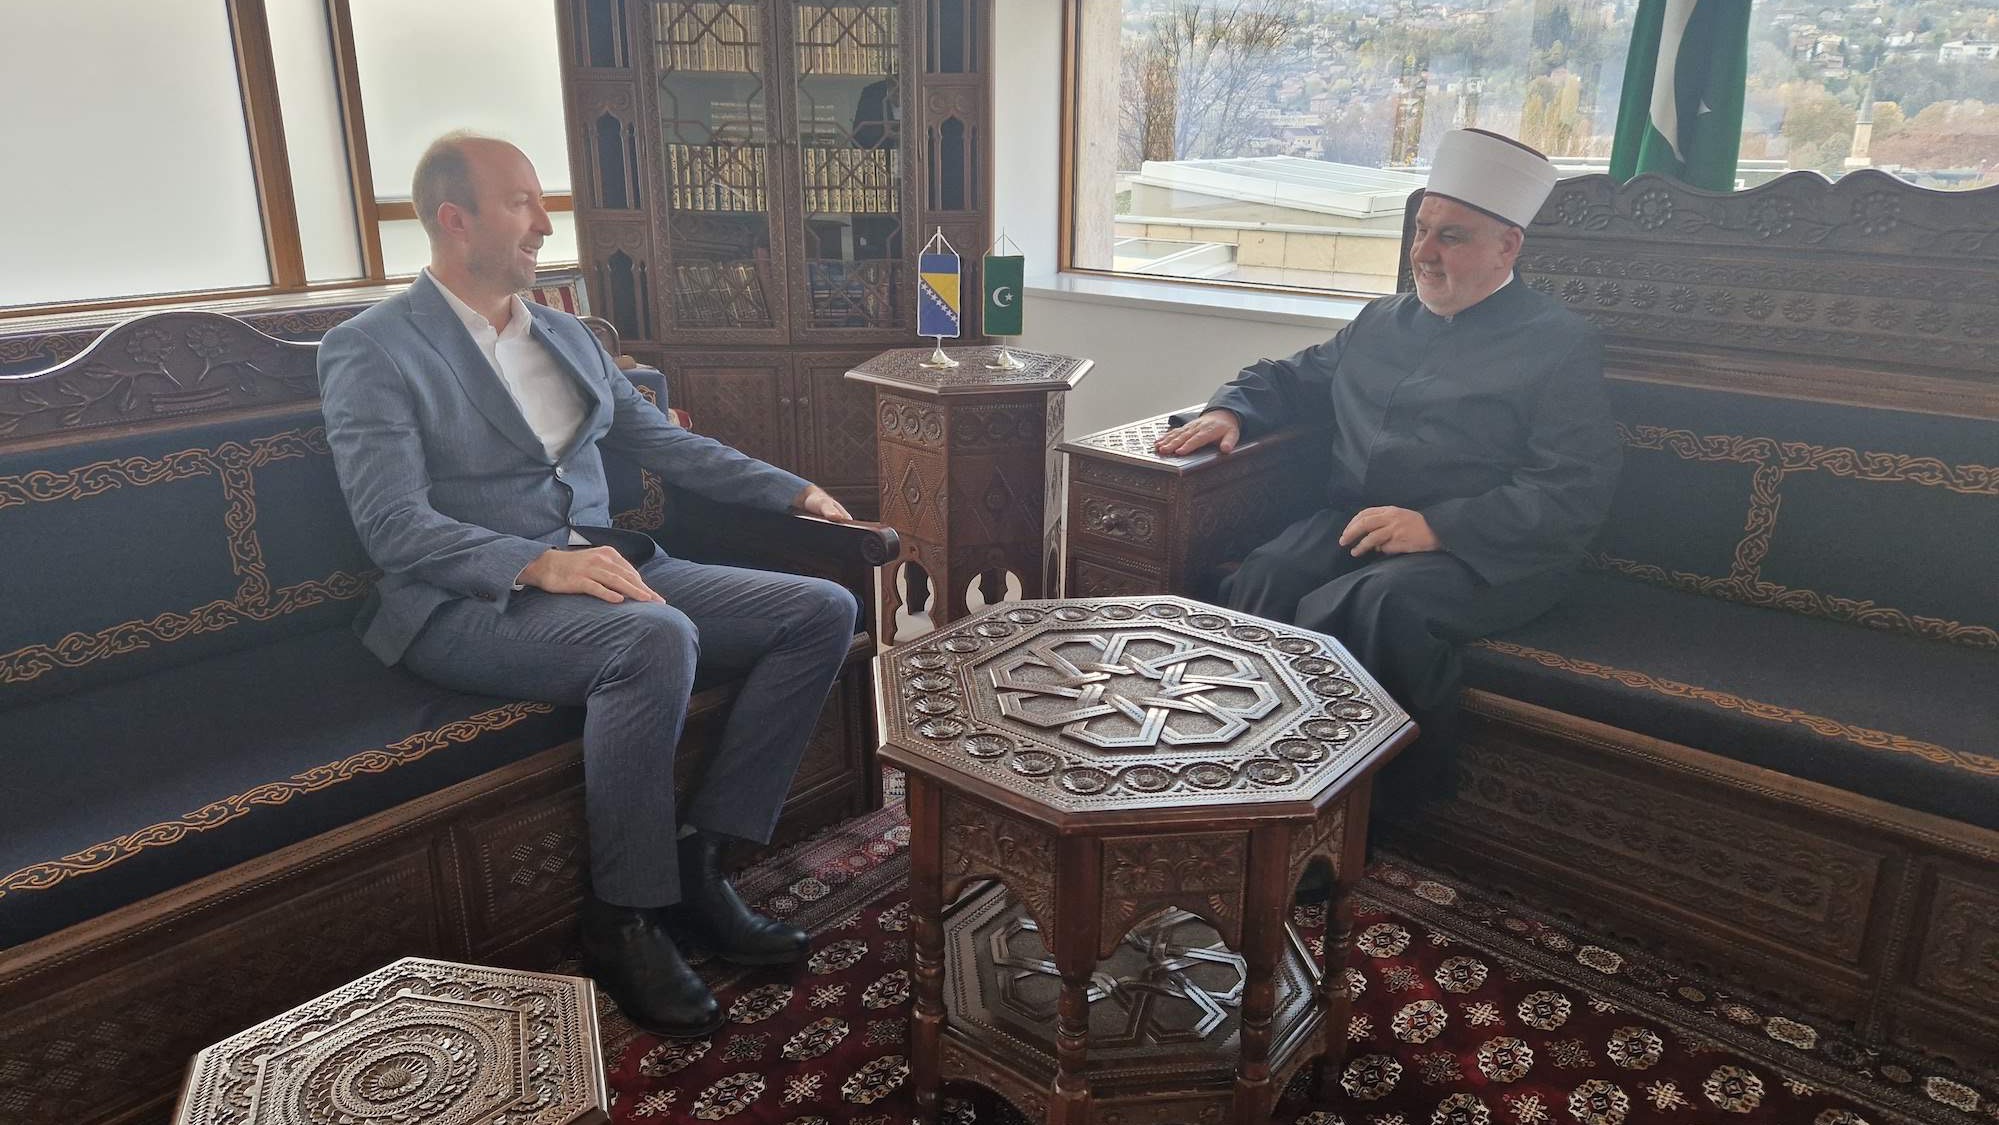 Reisul-ulemu posjetio predsjednik Ustavnog suda Islamske zajednice